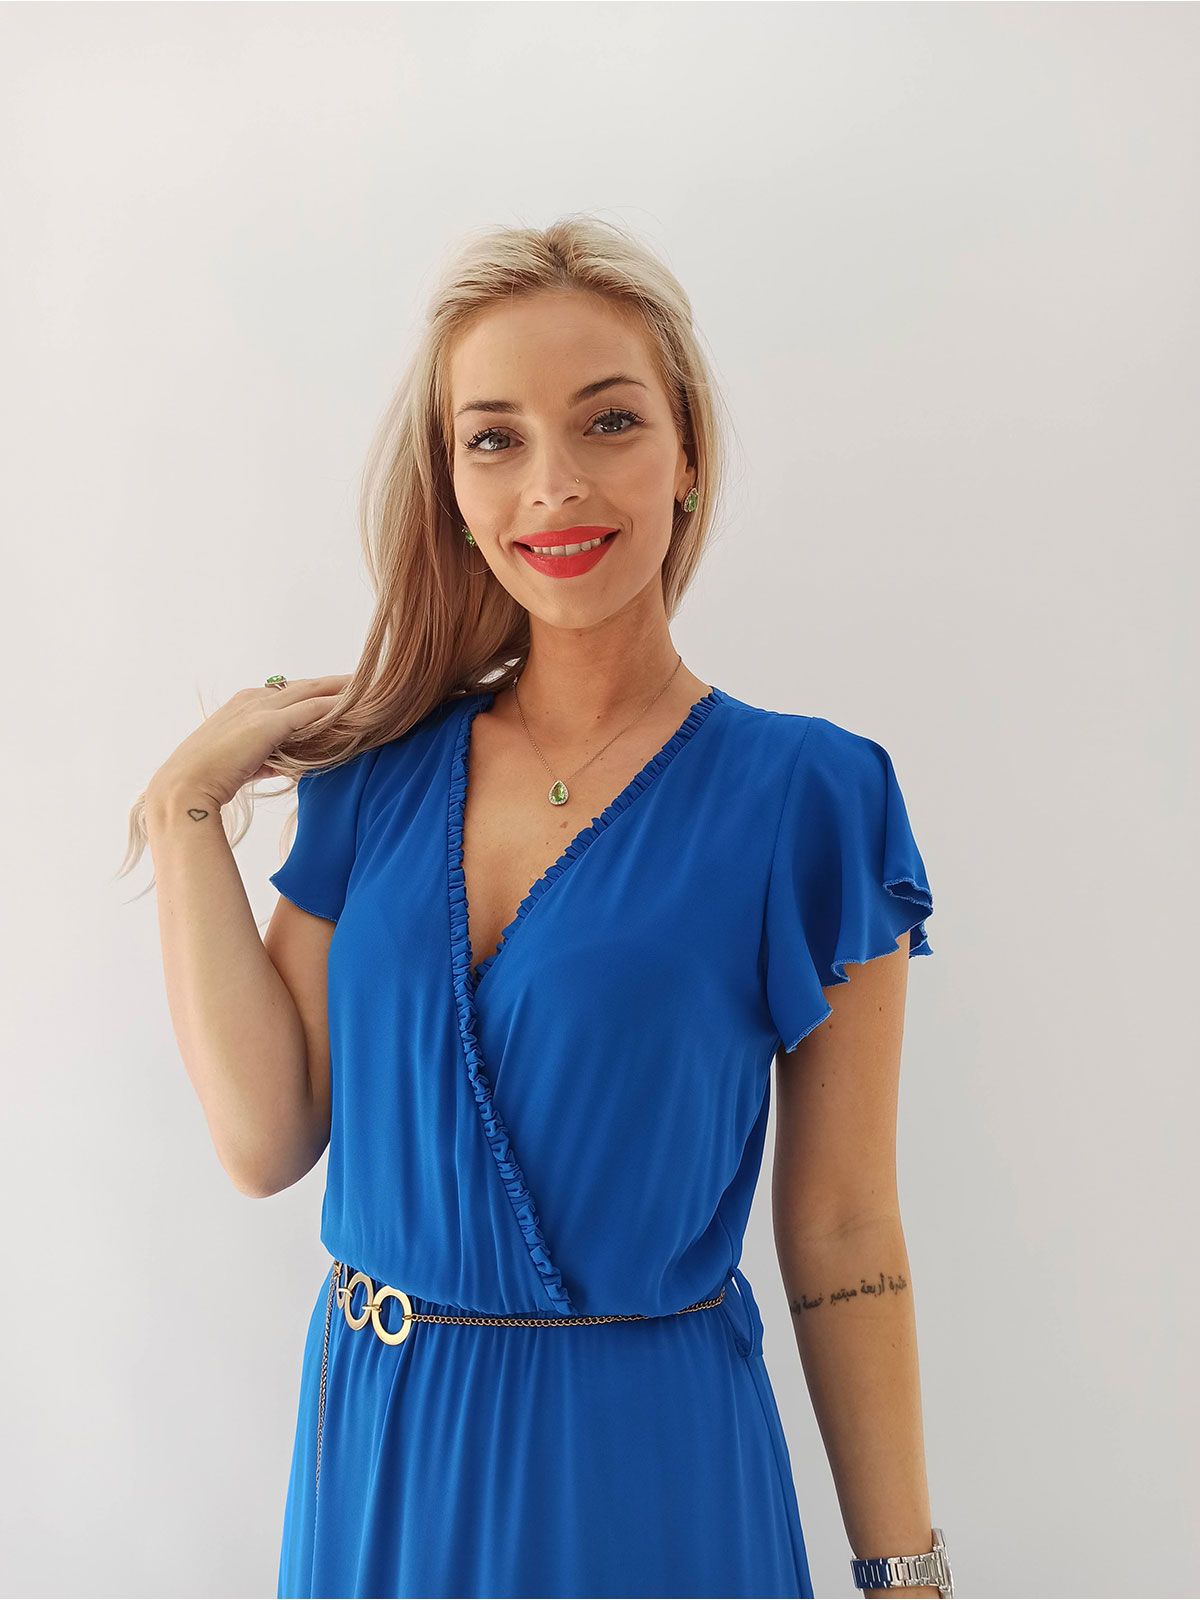 Φόρεμα μονόχρωμο κρουαζέ με βολάν και ζώνη αλυσίδα μπλε ρουά - Βραδινά -  Donna Martha :: Anima Fashion Store - Γυναικεία, παιδικά, βρεφικά ρούχα και  αξεσουάρ στο Ηράκλειο Κρήτης